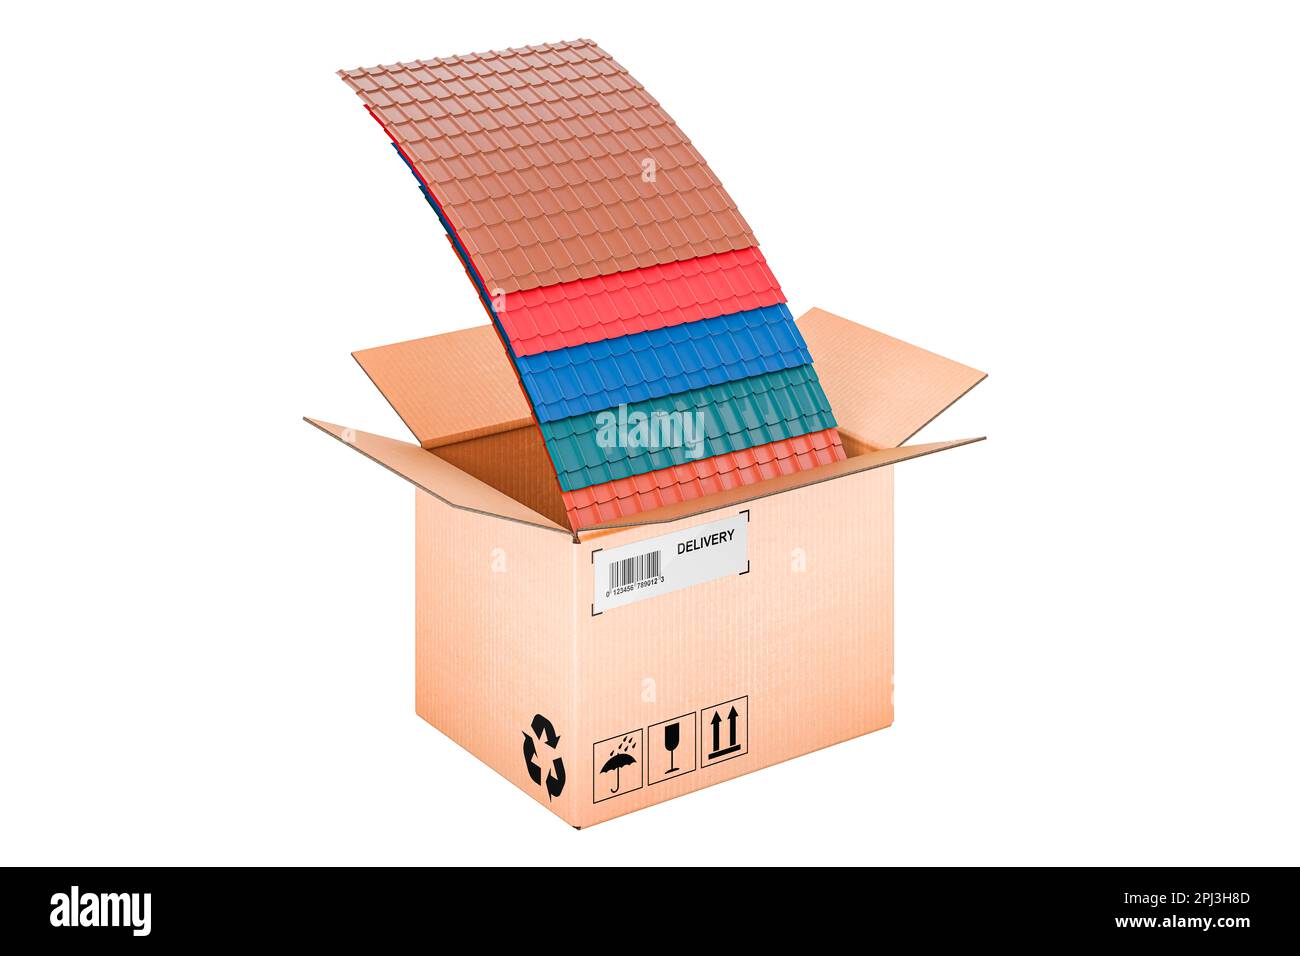 Tuiles de toit en métal de couleur à l'intérieur de la boîte en carton, concept de livraison. 3D rendu isolé sur fond blanc Banque D'Images